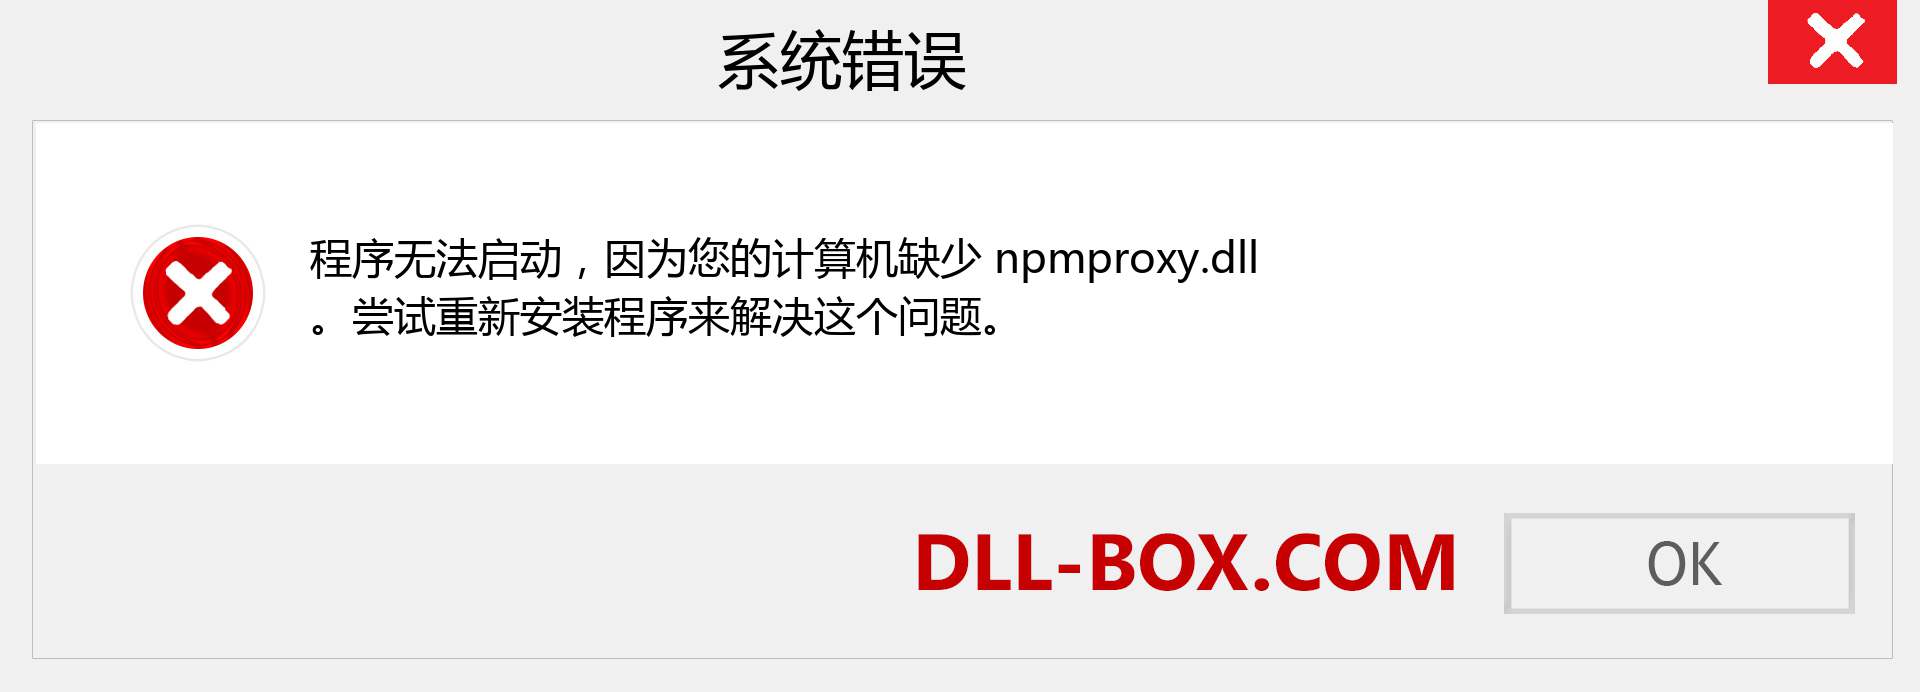 npmproxy.dll 文件丢失？。 适用于 Windows 7、8、10 的下载 - 修复 Windows、照片、图像上的 npmproxy dll 丢失错误